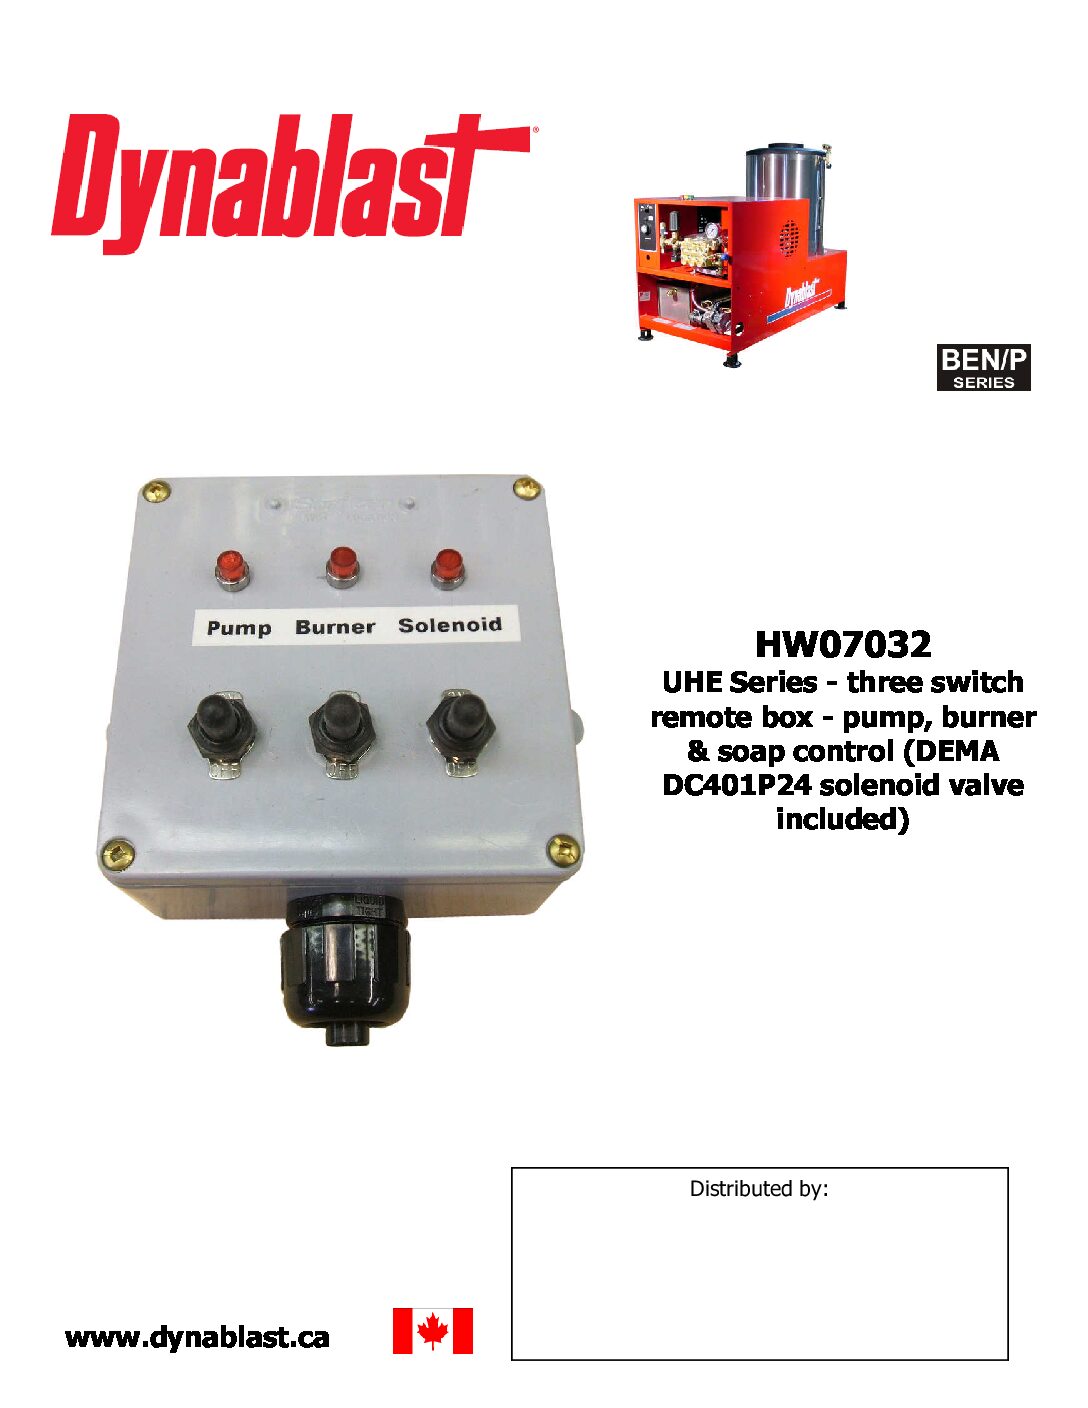 Dynablast HW07032 Three Switch Remote Box